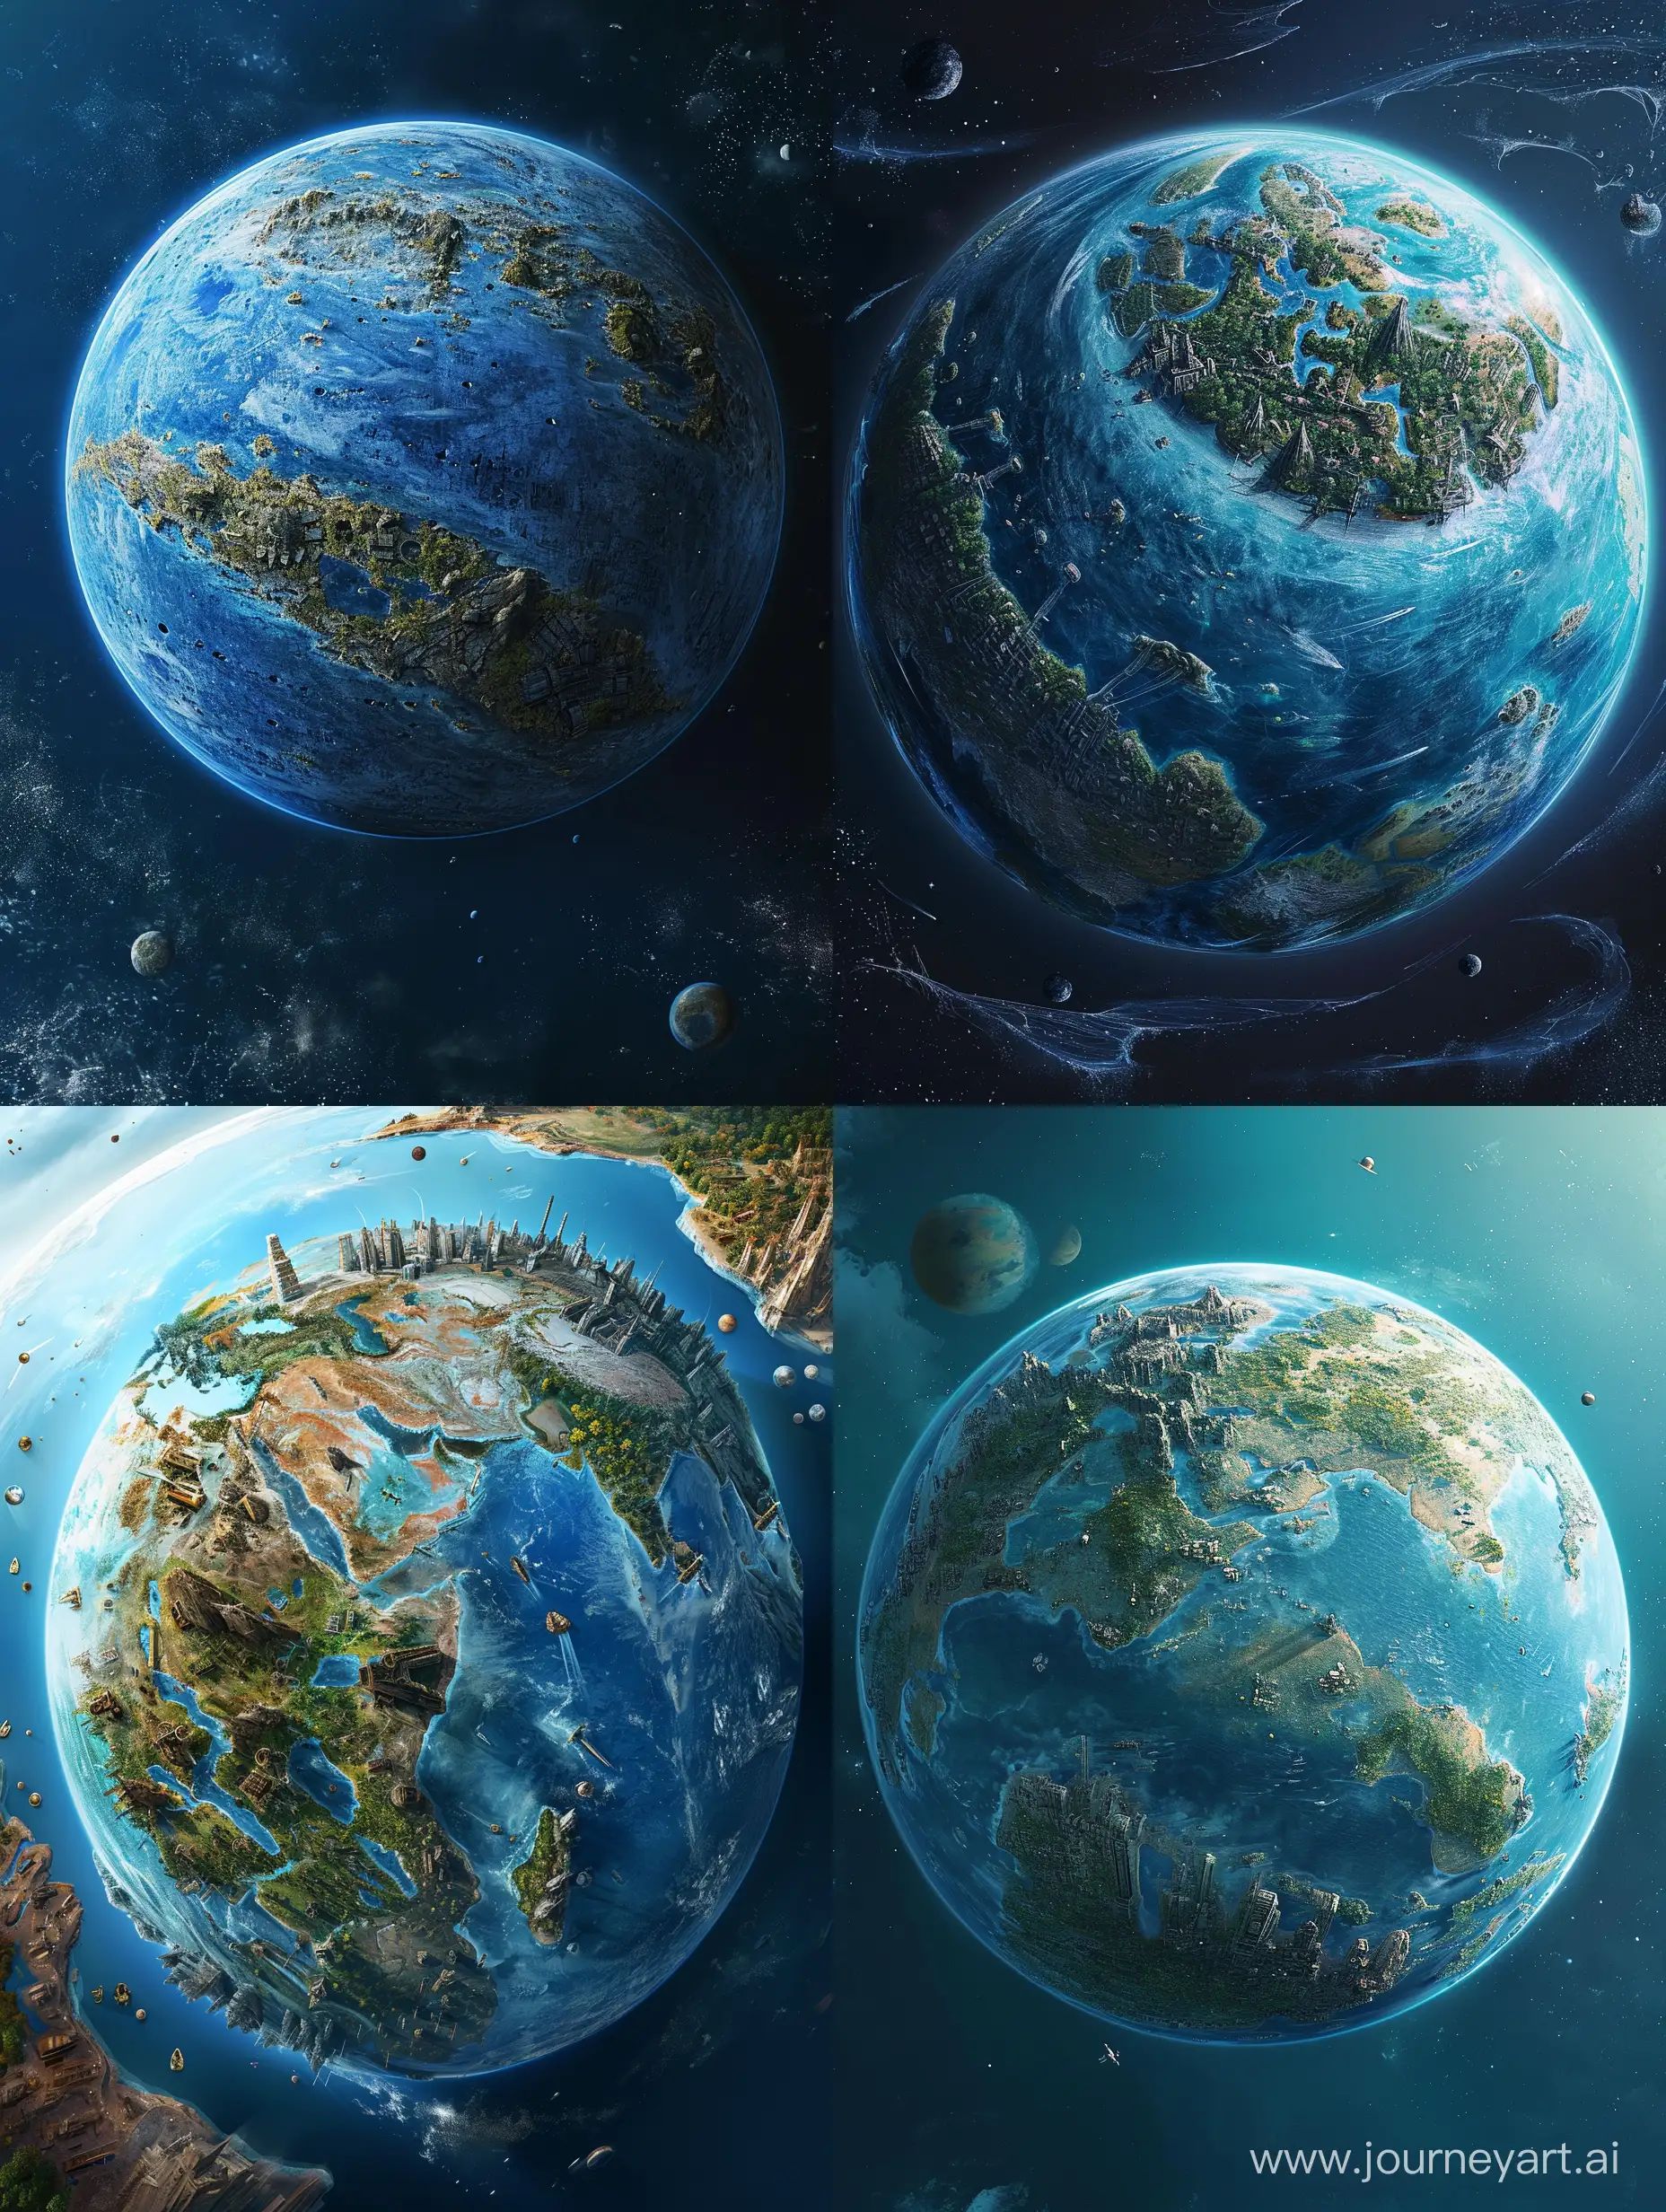 голубая планета, большая часть состоит из воды, на планете суша похожая на длинную толстую полосу, вокруг много островов, на планете много рек, озер, гор, леса, пустыни и ледники, на планете видны остатки старых построений и городов.